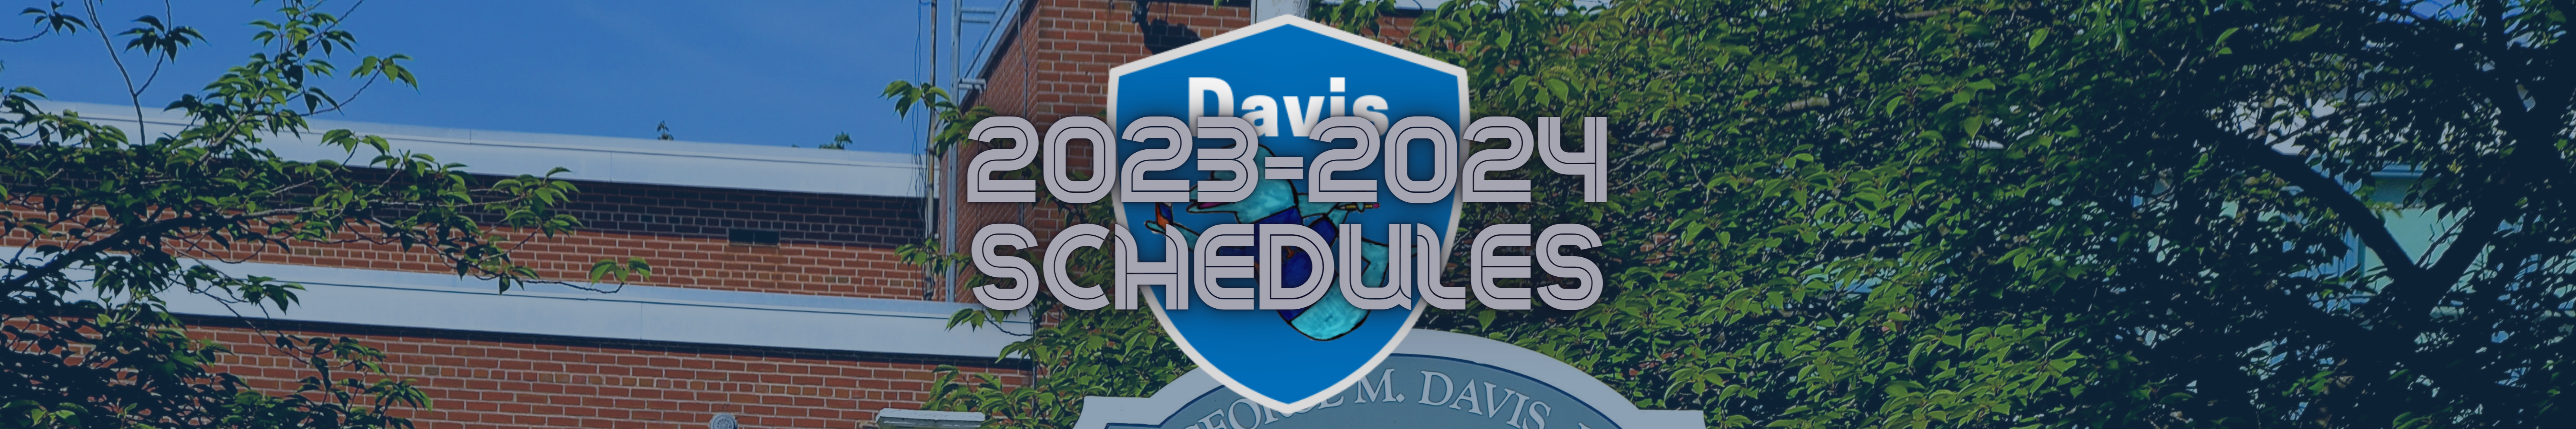 2023-2024 Schedule banner